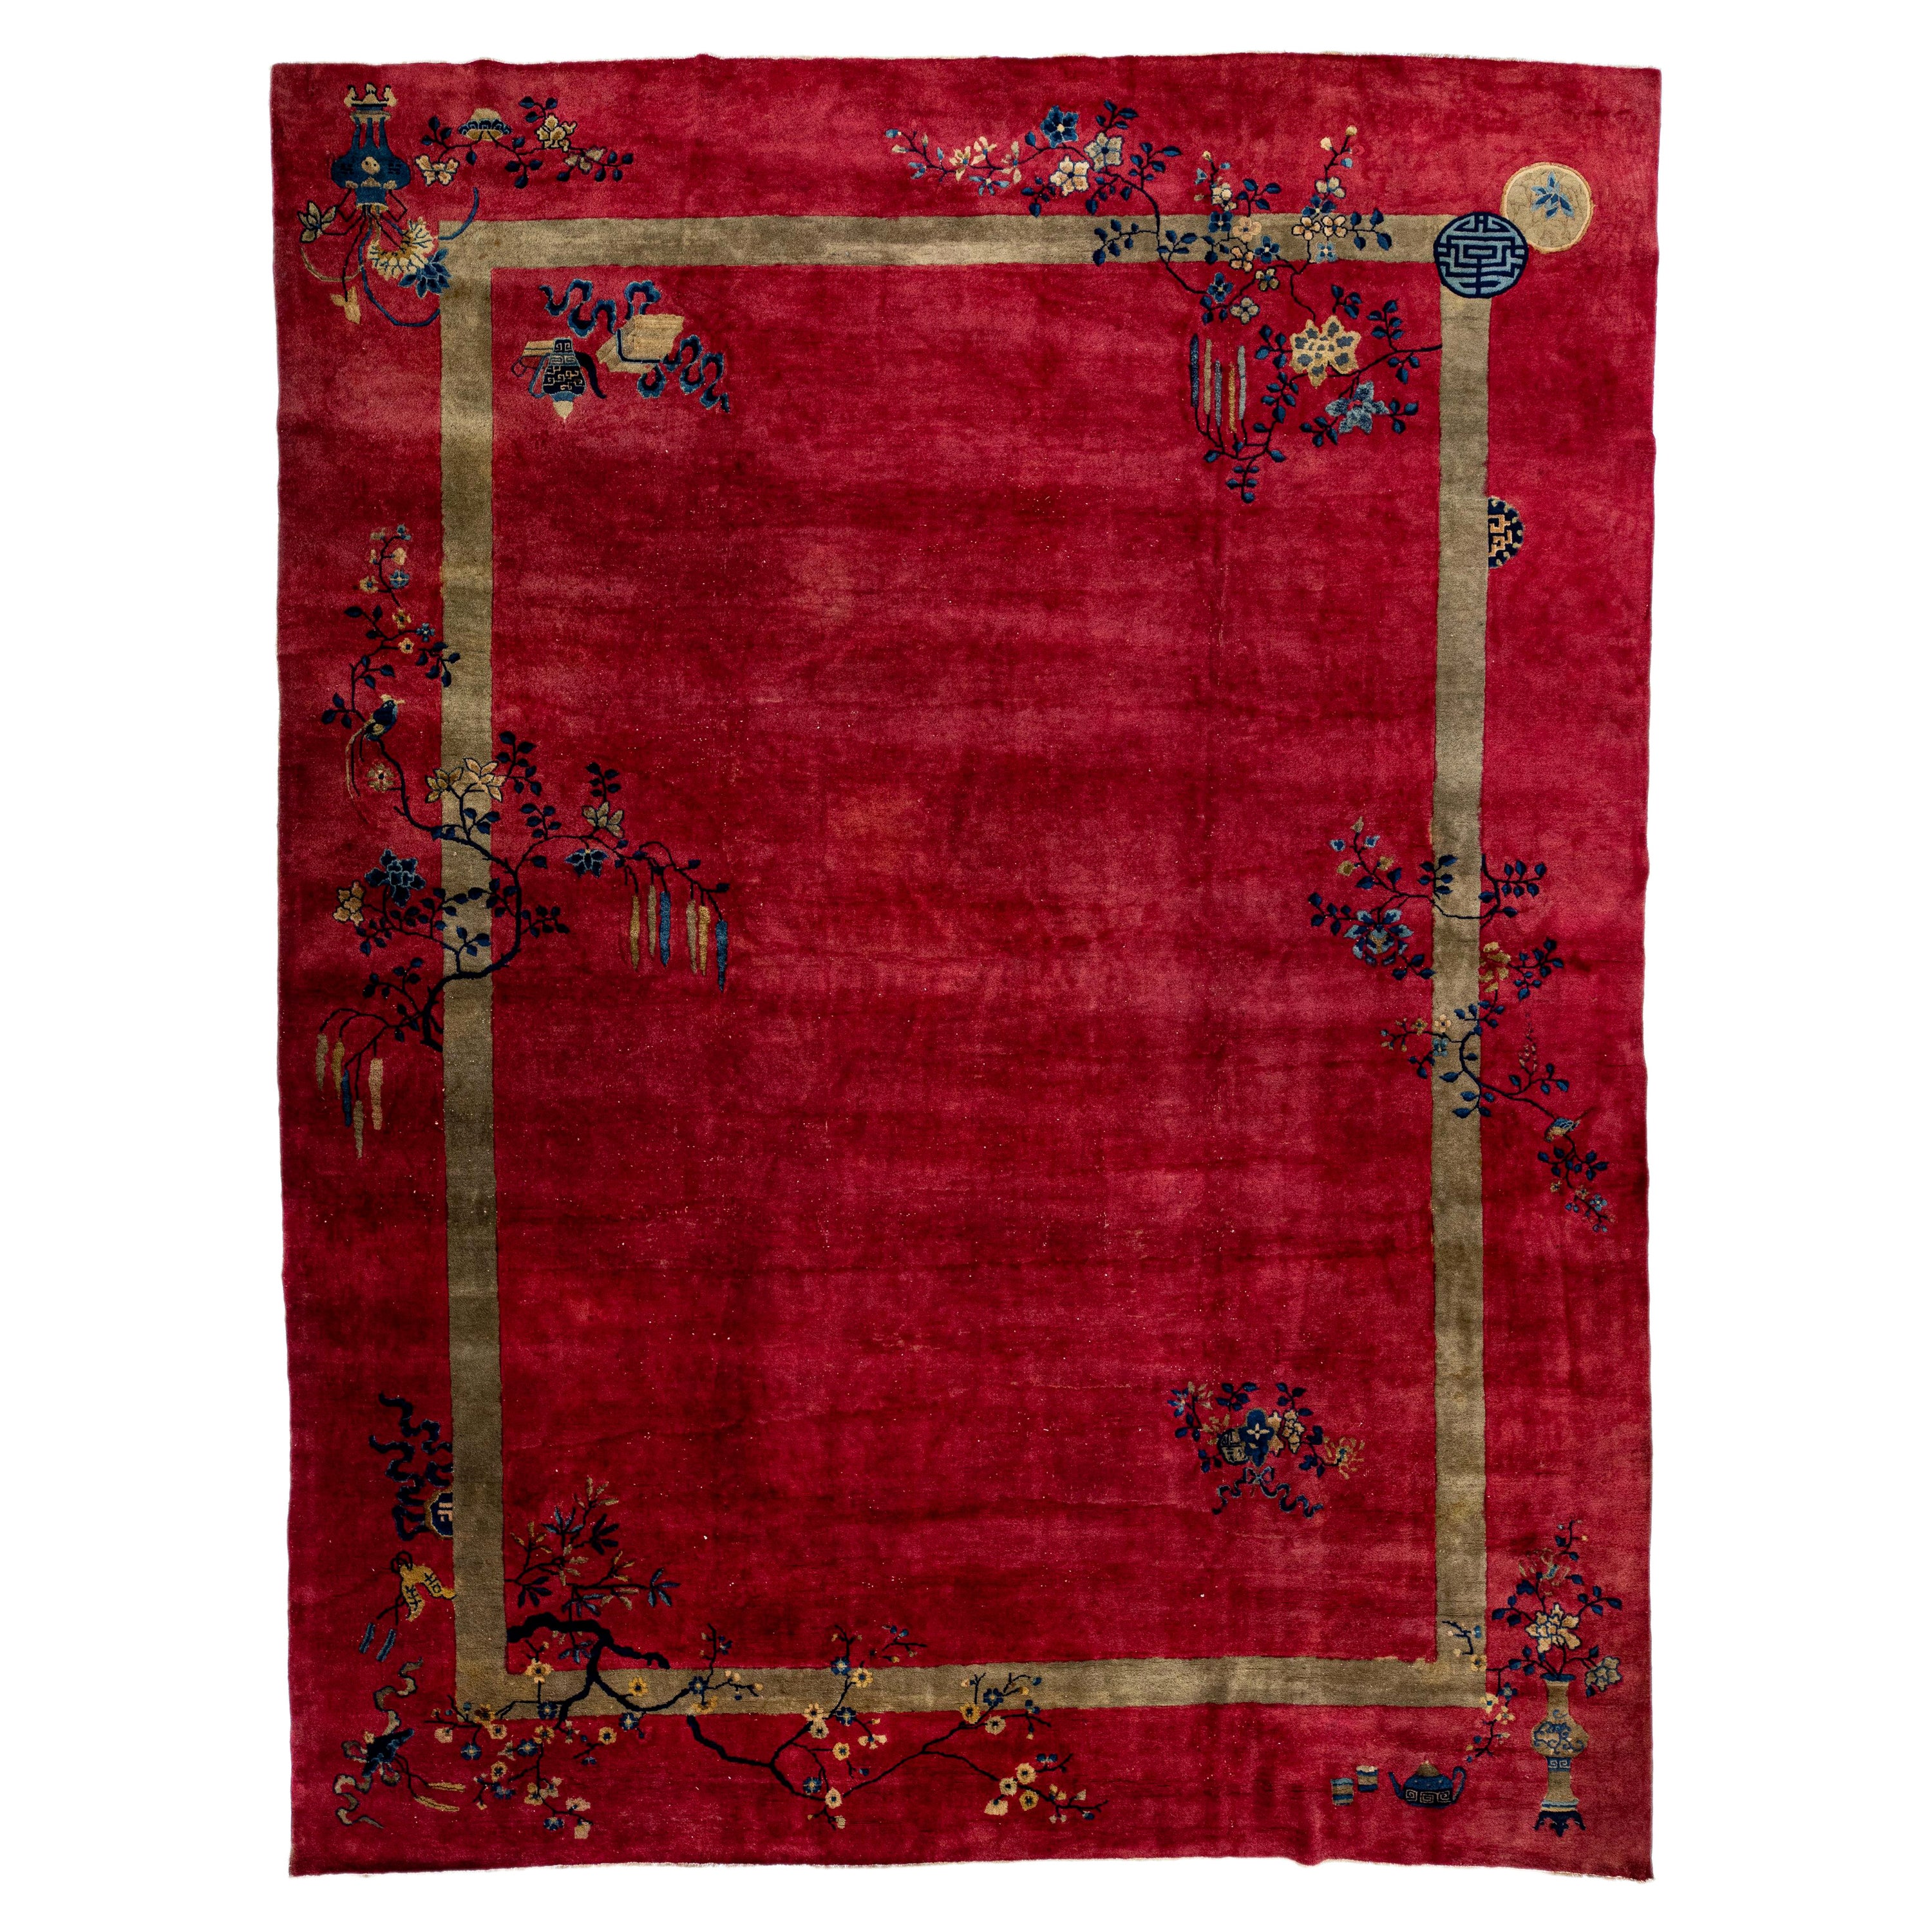 Roter antiker handgefertigter, geblümter Teppich aus chinesischer Wolle im Art déco-Stil